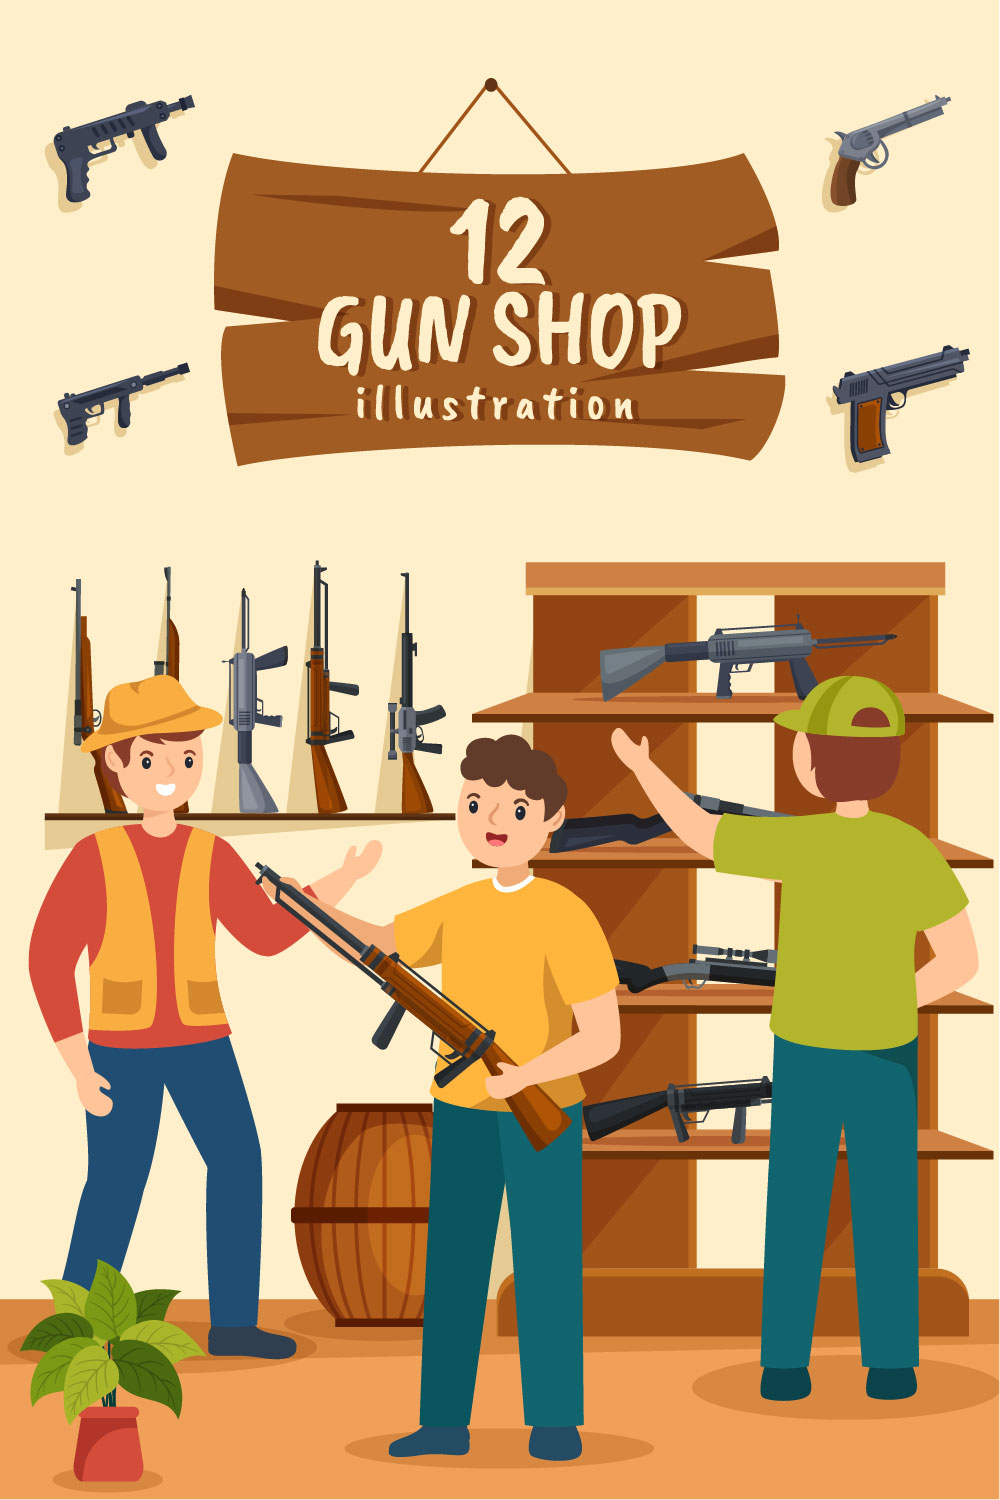 Gun Shop or Hunting Illustration pinterest image.